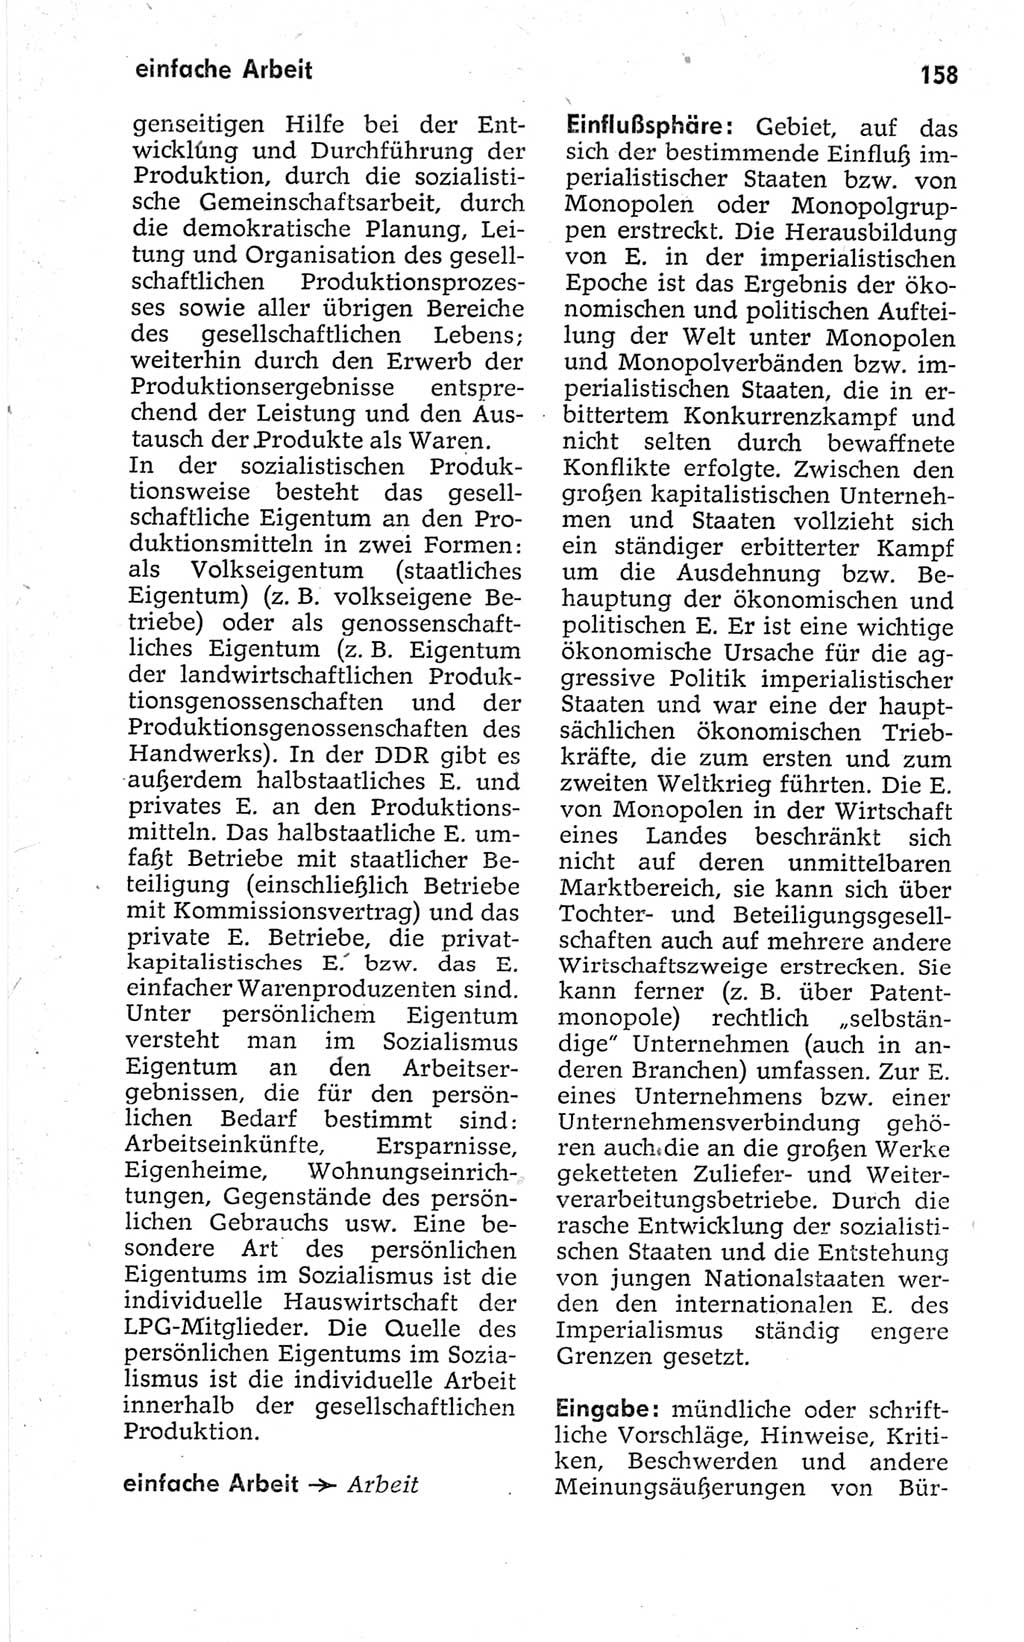 Kleines politisches Wörterbuch [Deutsche Demokratische Republik (DDR)] 1967, Seite 158 (Kl. pol. Wb. DDR 1967, S. 158)